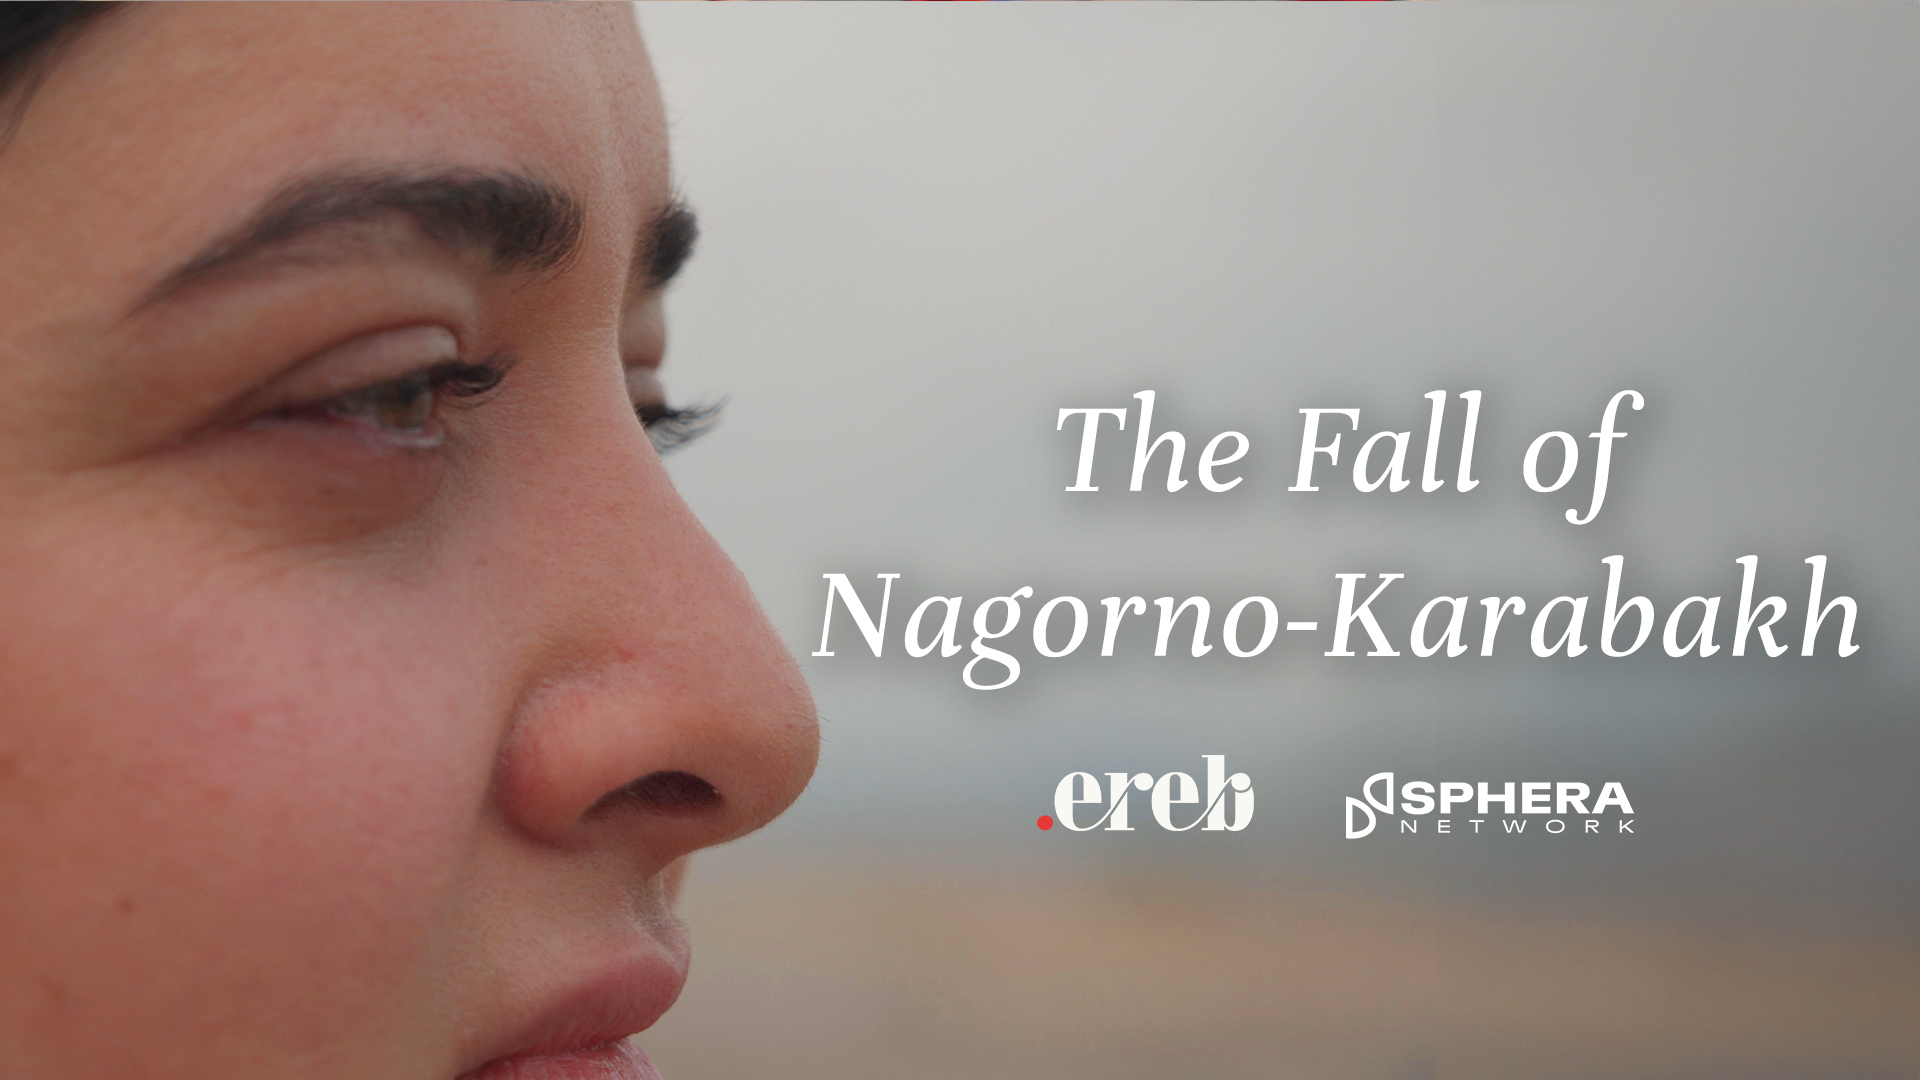 The Fall of Nagorno-Karabakh